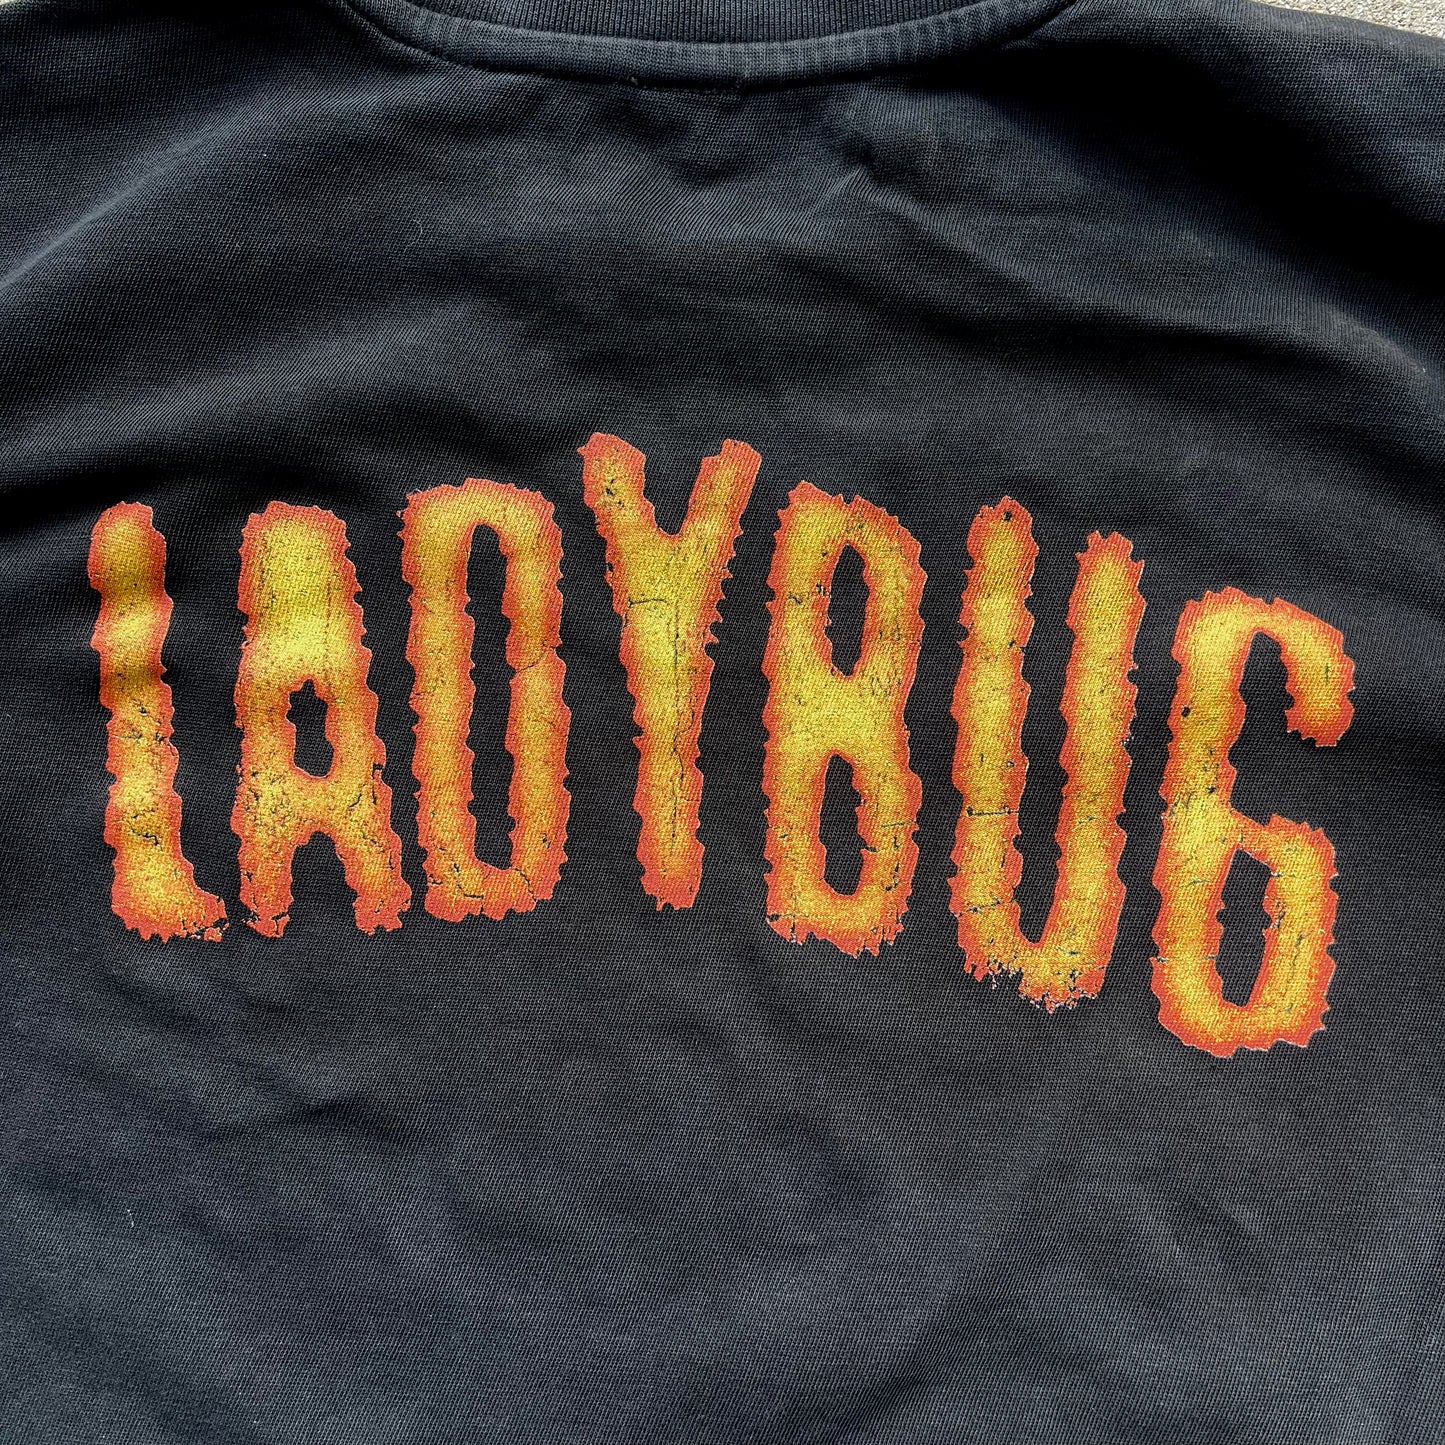 Ladybug Tee